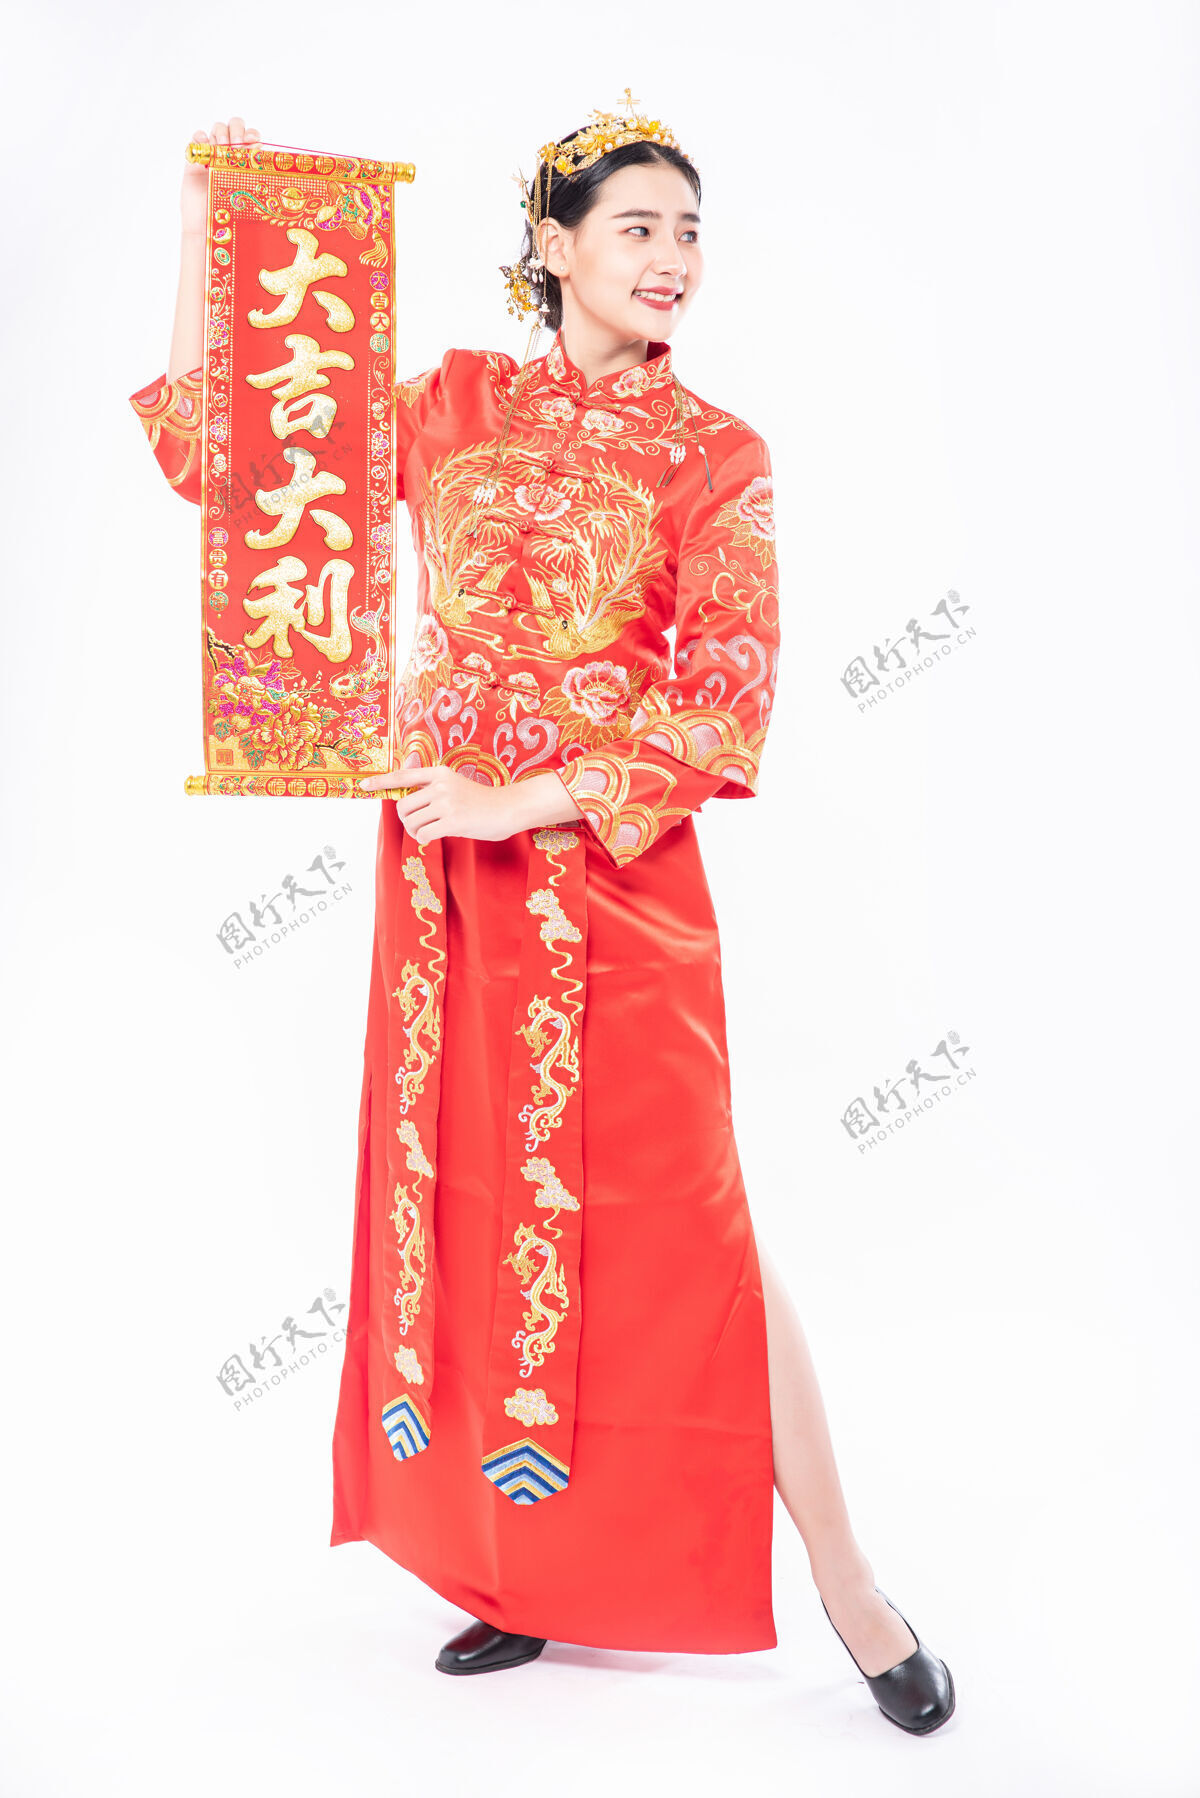 微笑穿旗袍套装的女士在中国新年给家人送上中国贺卡祝好运欢呼中国文化女孩